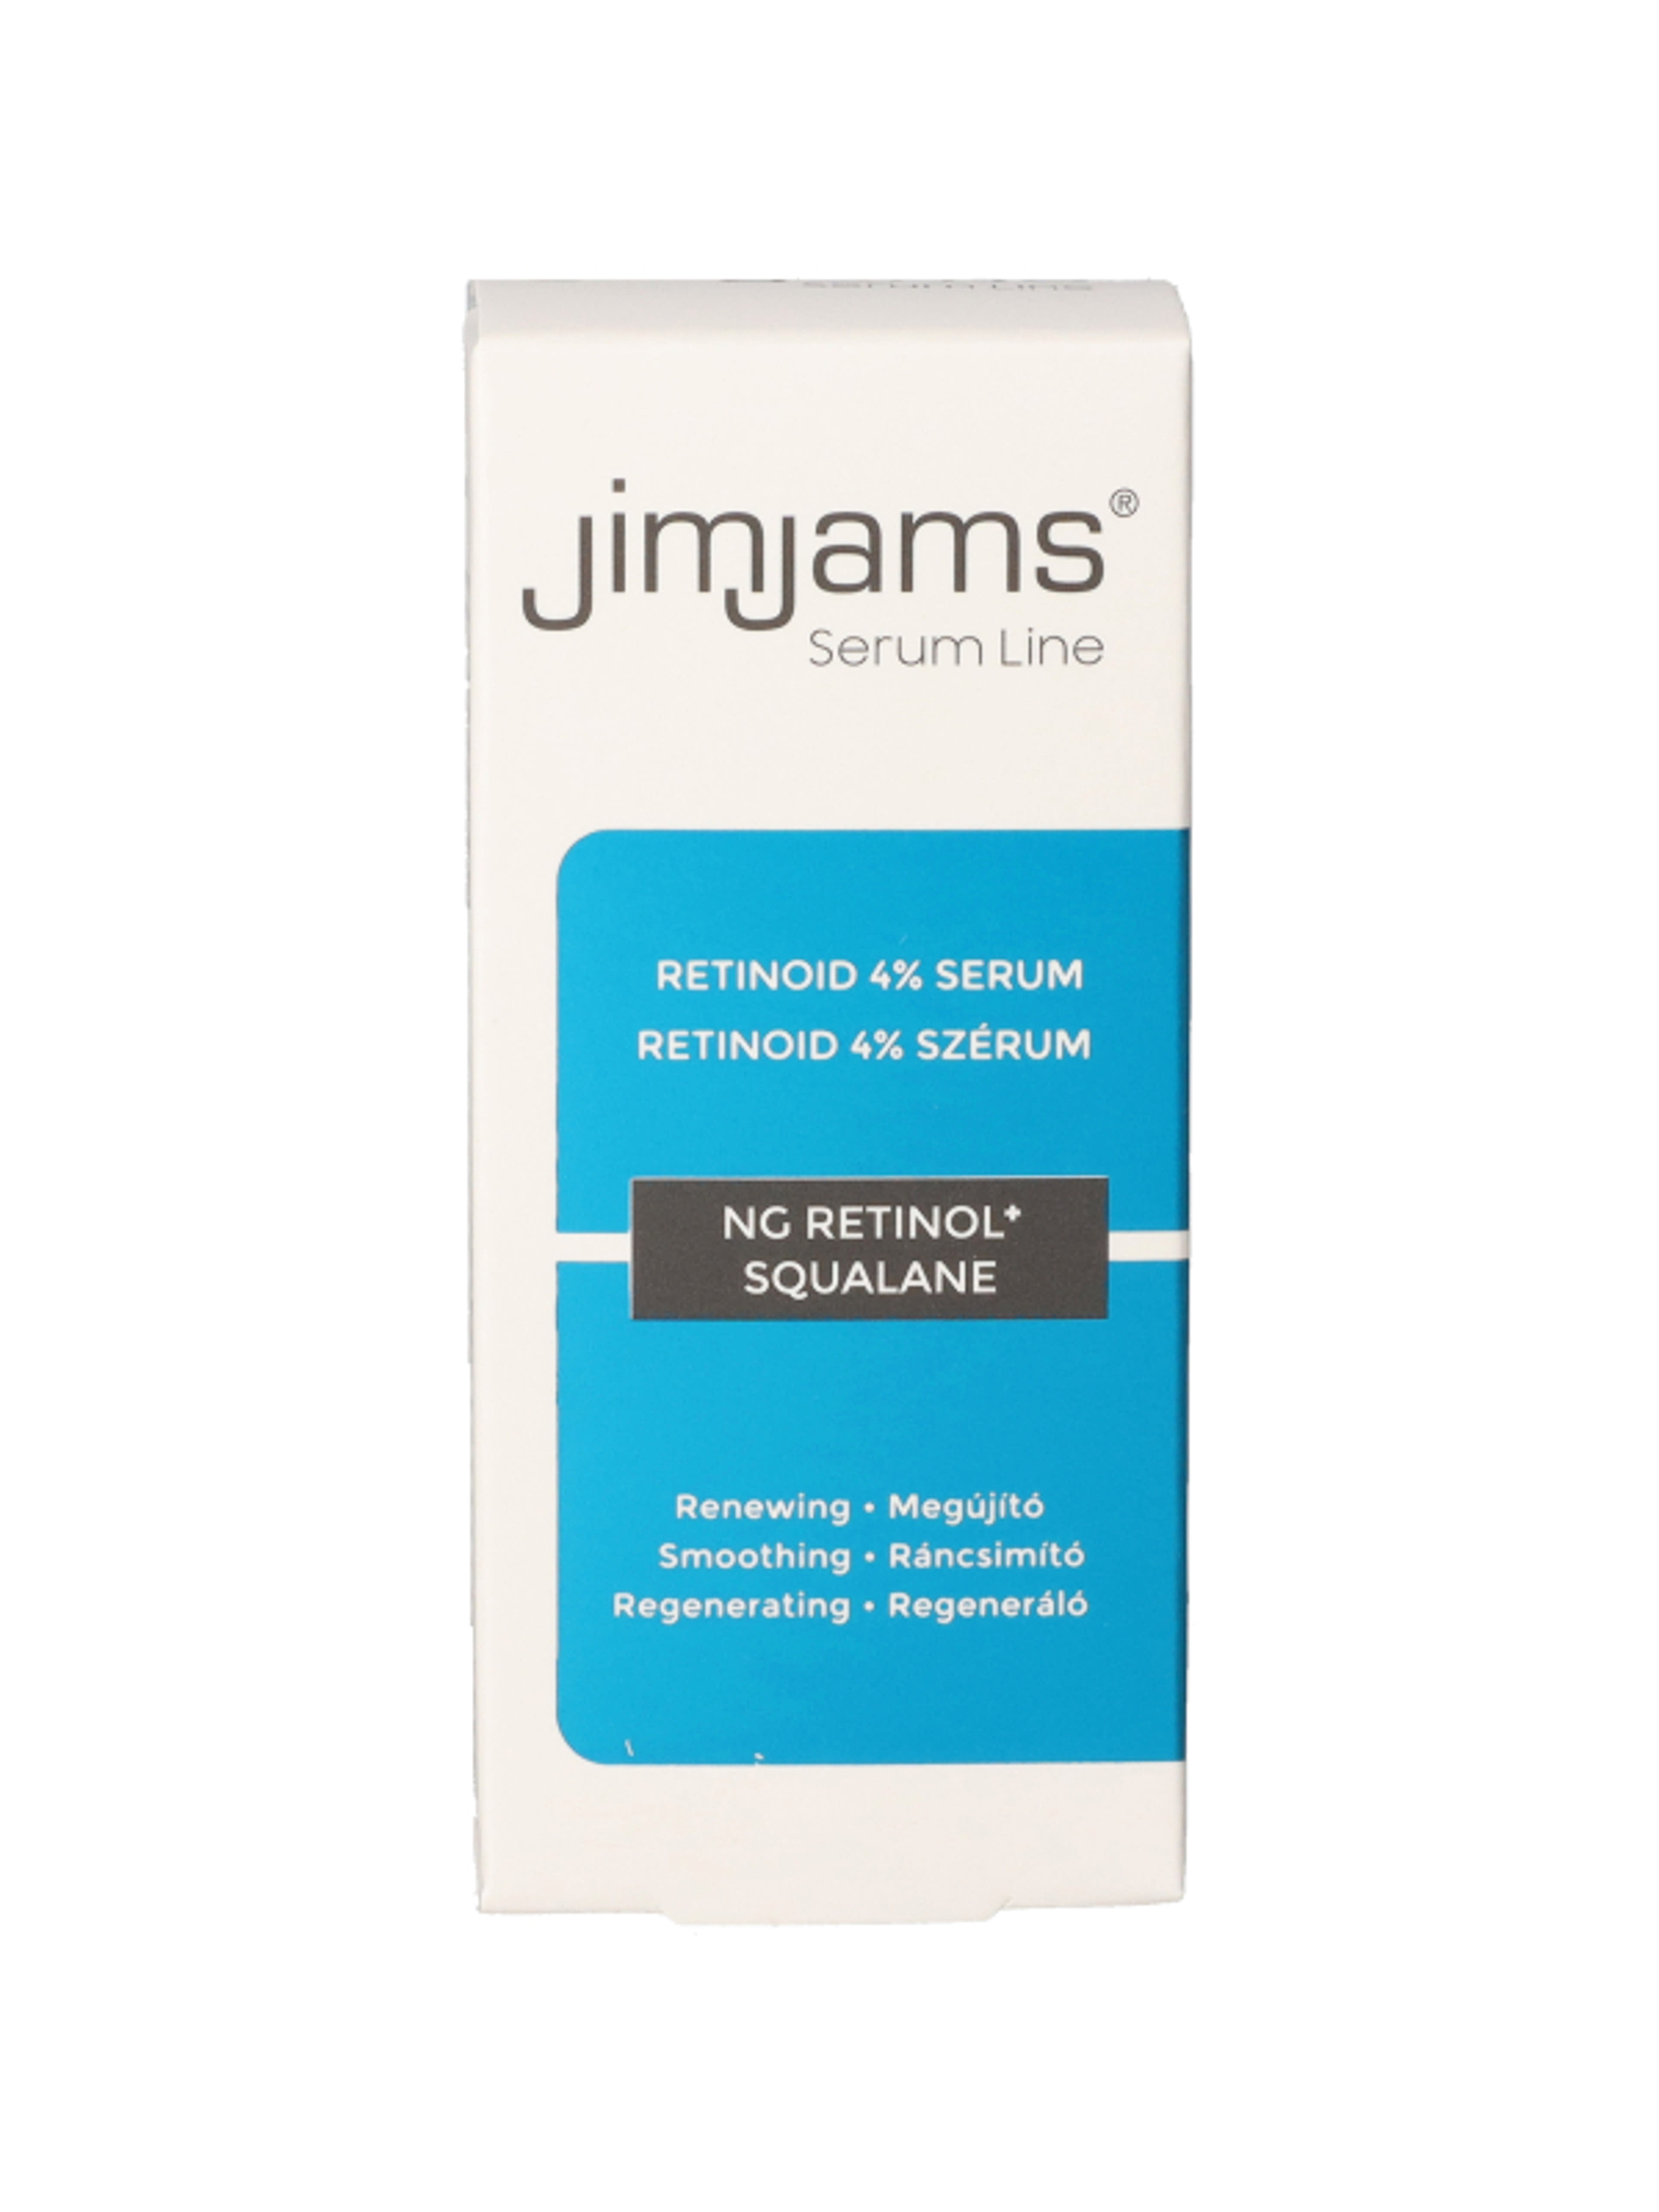 JimJams Serum Line NG Retinol+4% Retinoid szérum - 30 ml-1